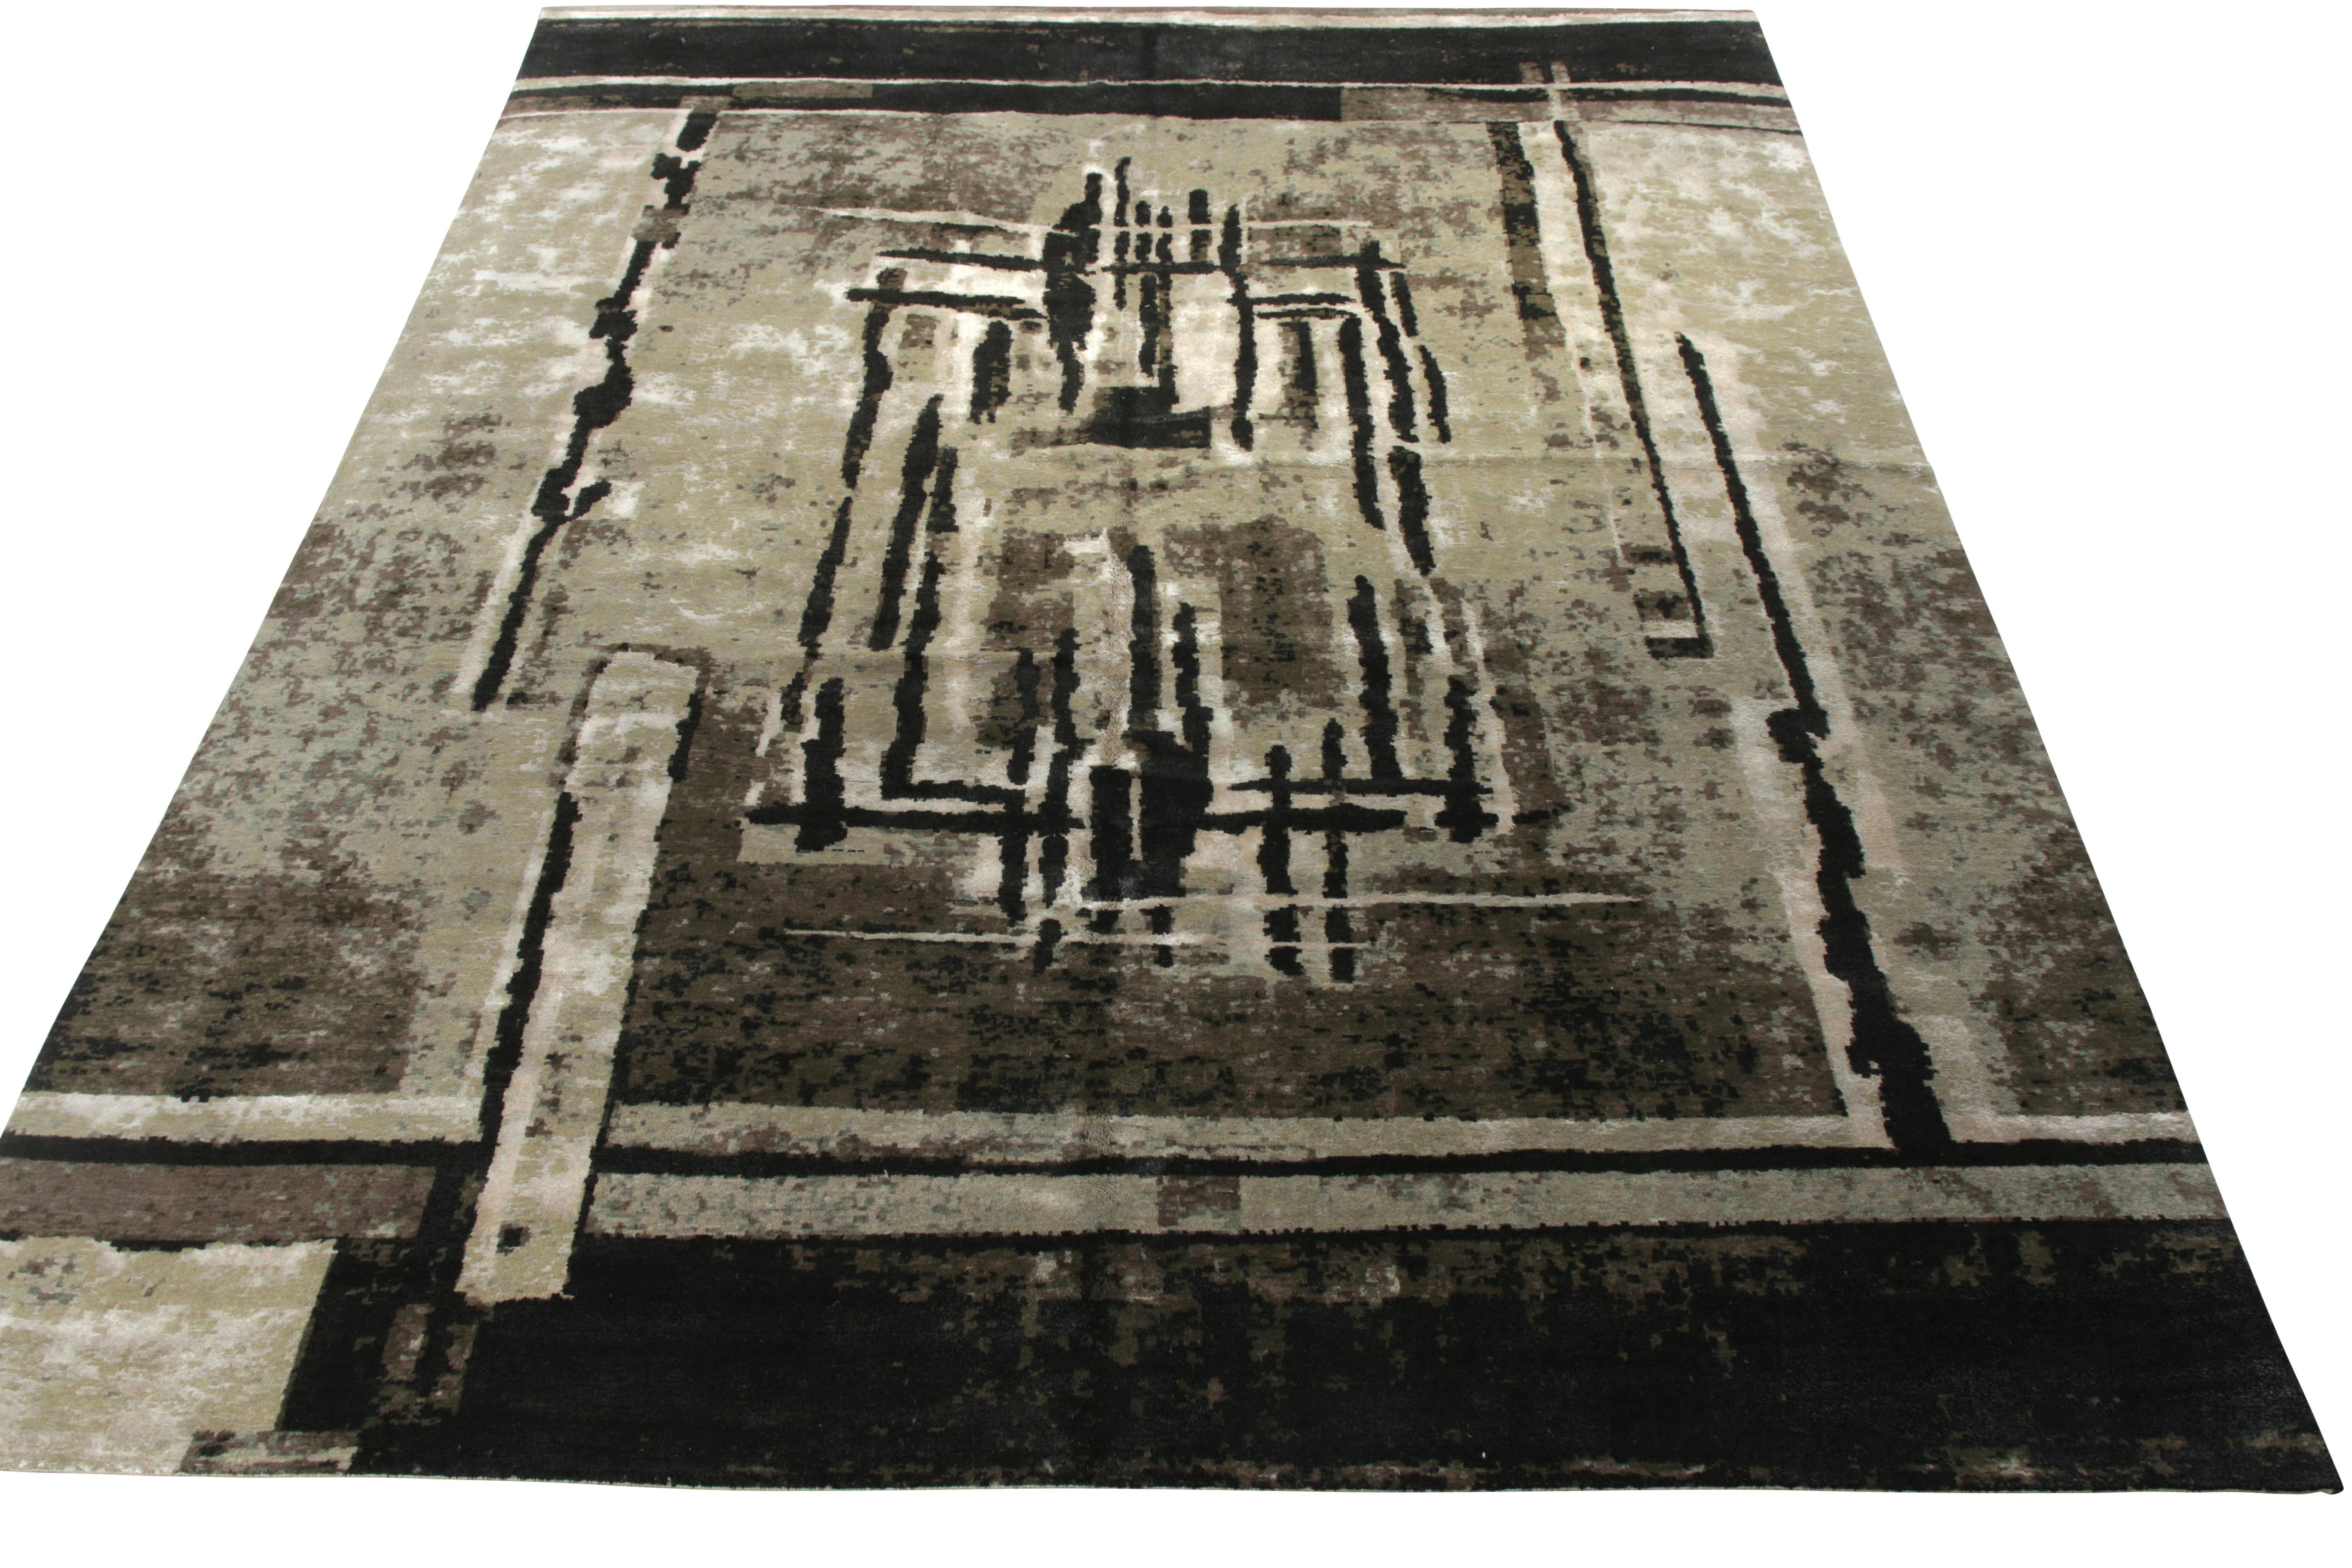 Dieser moderne Teppich im Format 11x14 aus einer feinen Woll-Seiden-Mischung ist handgeknüpft und stammt aus der von der Deco-Kultur inspirierten Kollektion von Rug & Kilim. Das Stück trägt ein kompliziertes geometrisches Muster und spielt mit